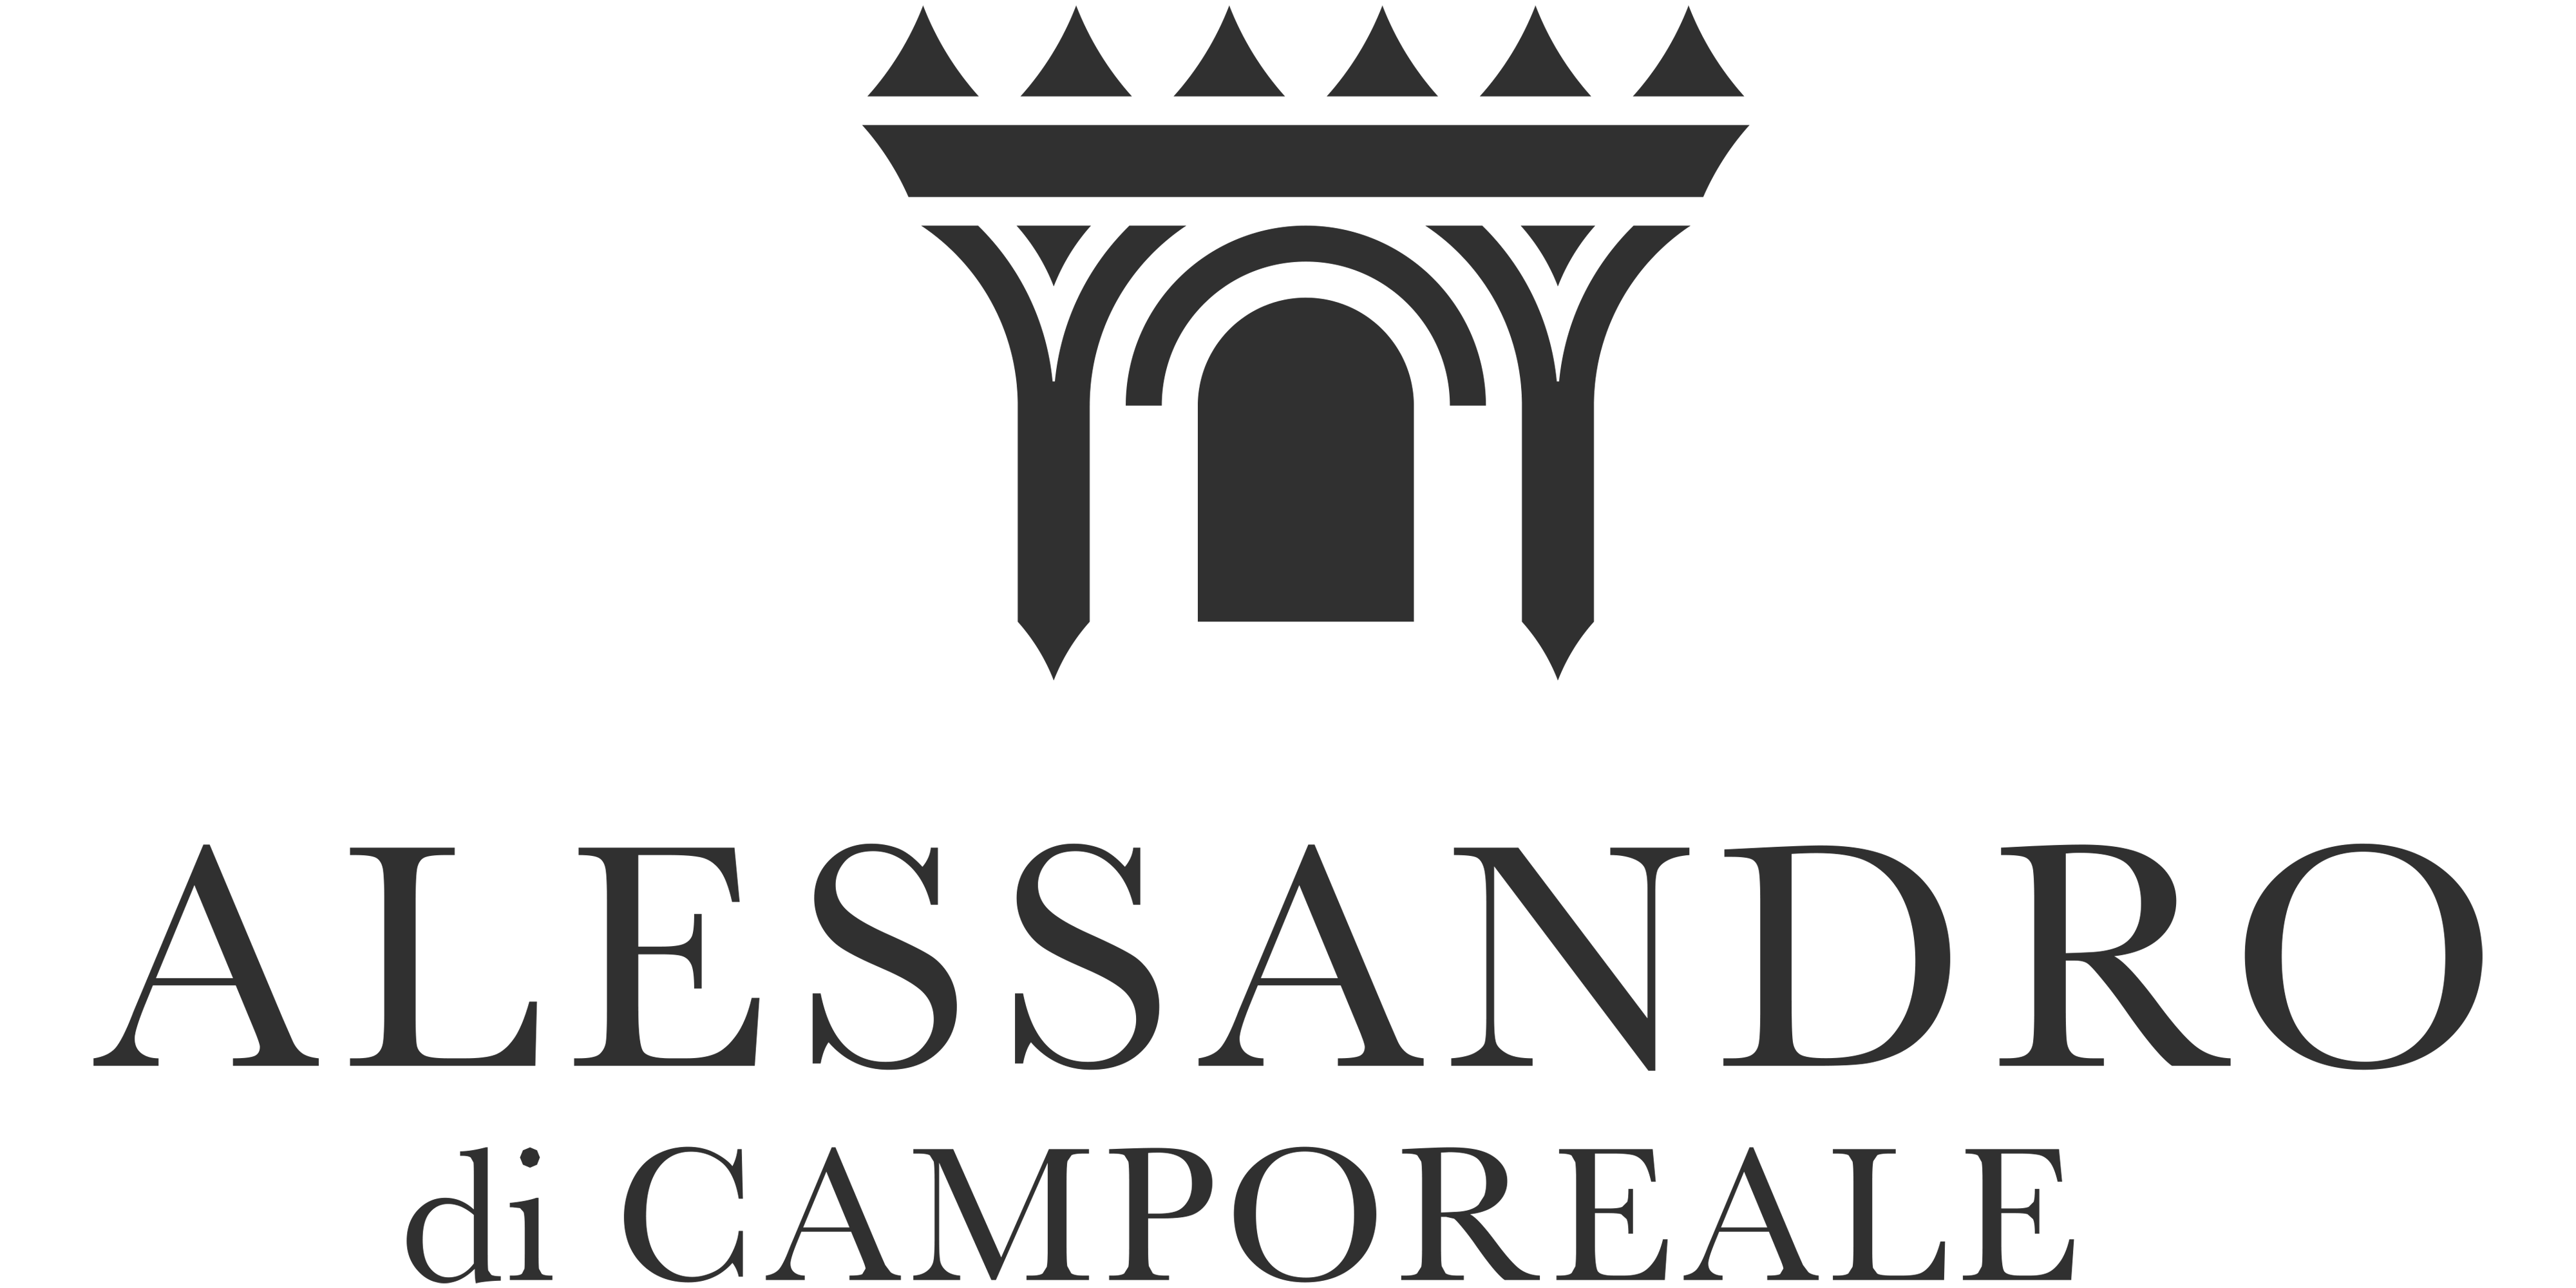 Alessandro di Camporeale